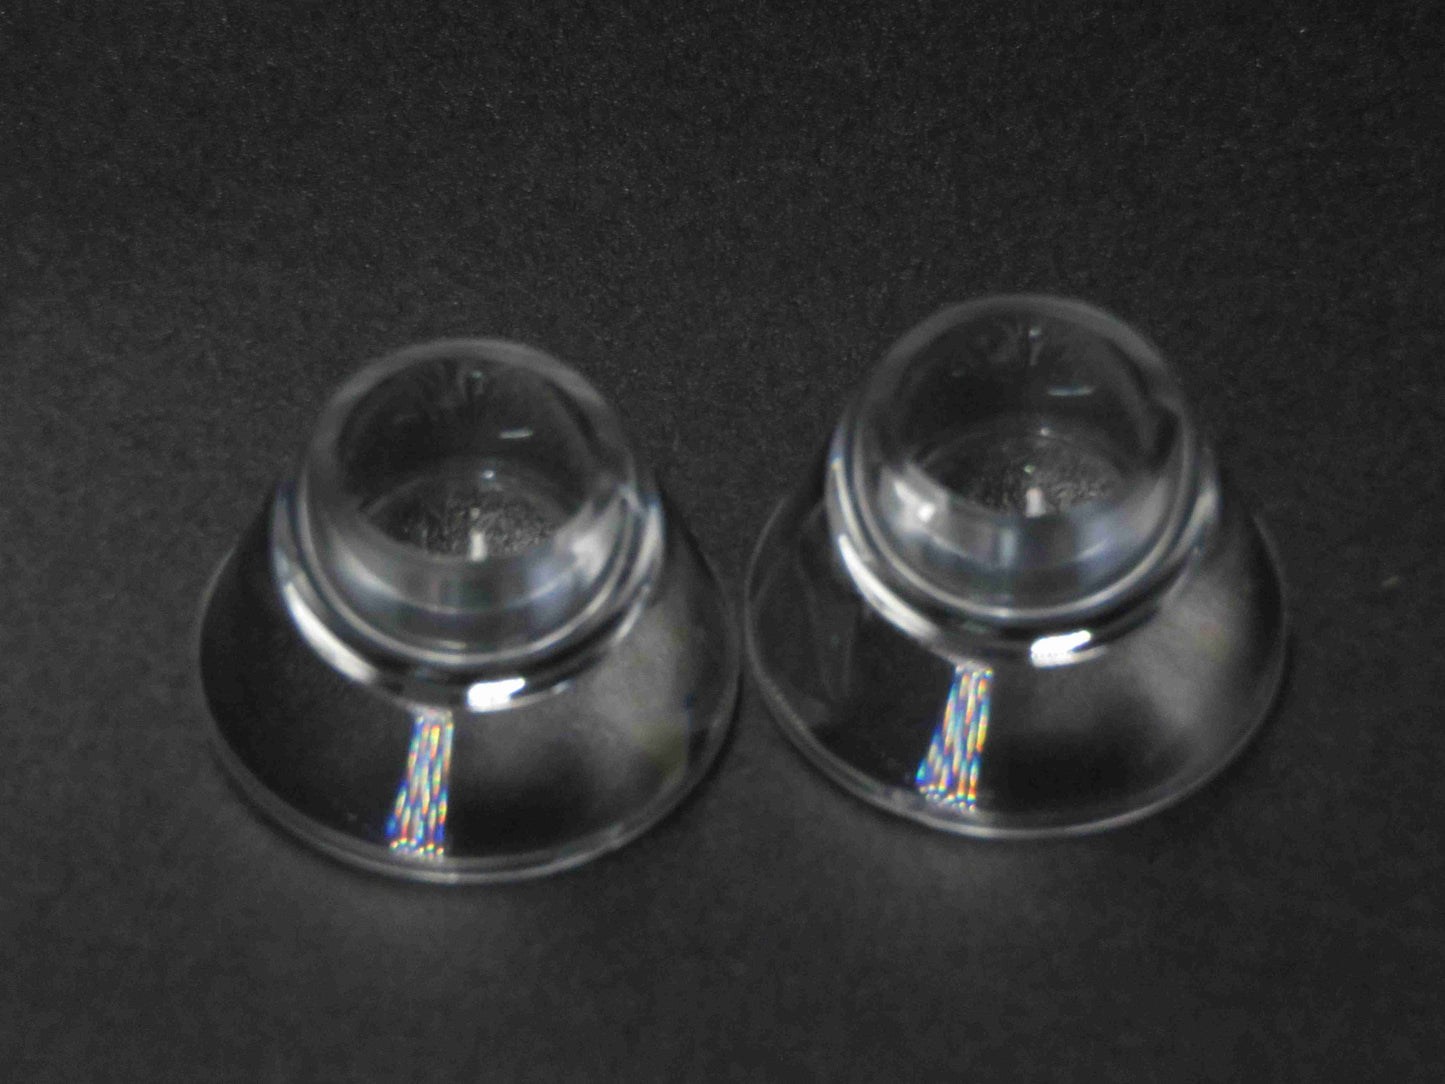 TIR Lens Reflector Collimator Čočka optiky svítilny 6-60° pro LED svítilnu